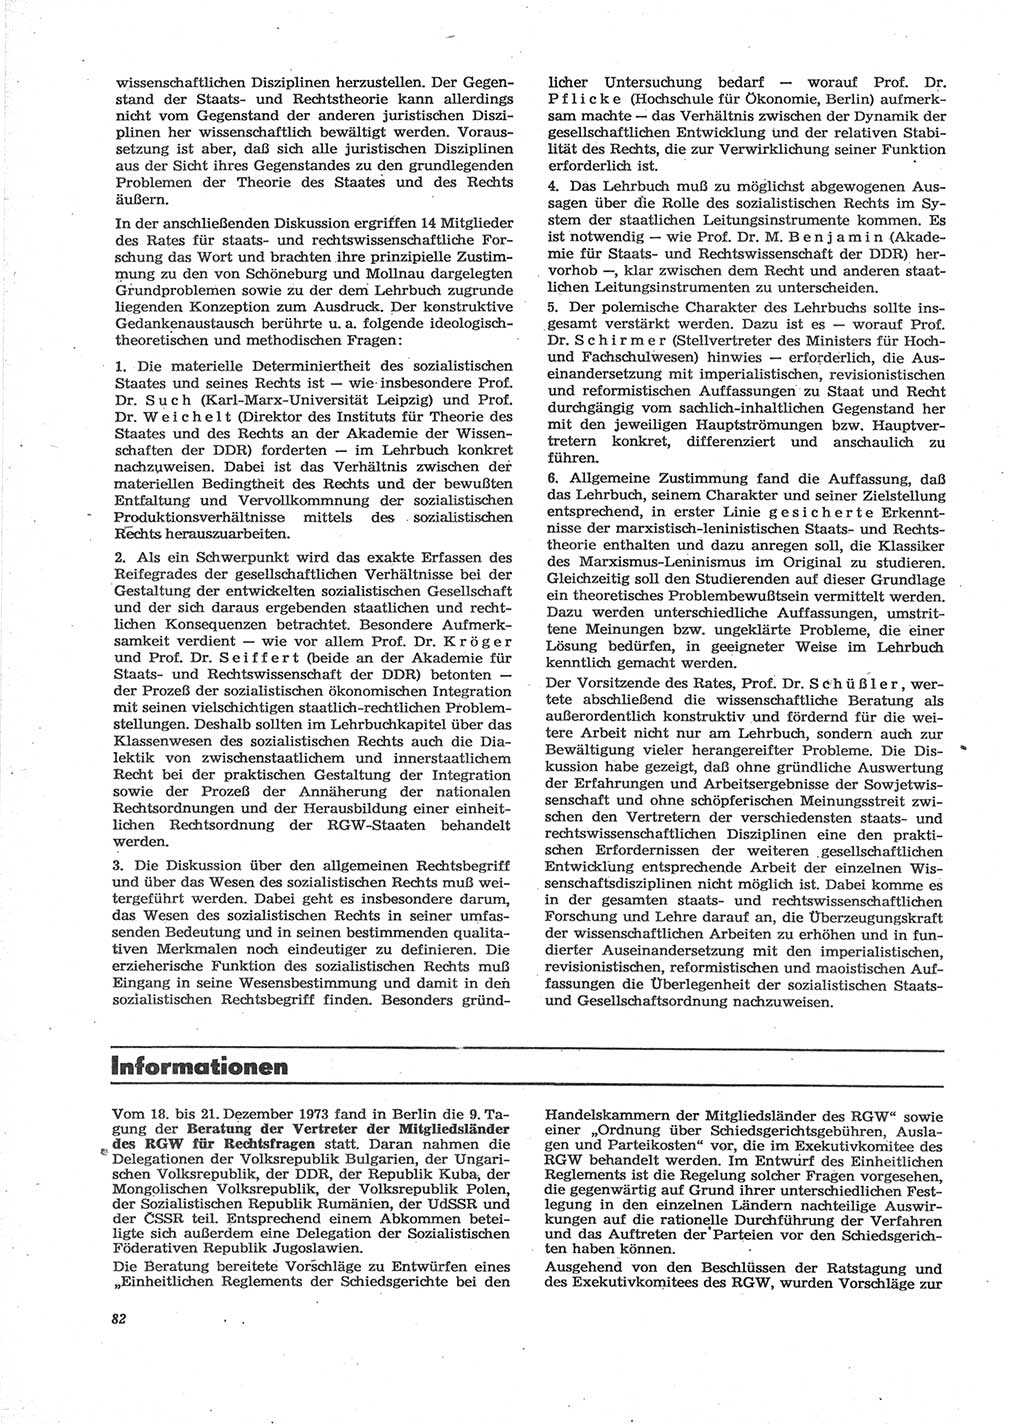 Neue Justiz (NJ), Zeitschrift für Recht und Rechtswissenschaft [Deutsche Demokratische Republik (DDR)], 28. Jahrgang 1974, Seite 82 (NJ DDR 1974, S. 82)